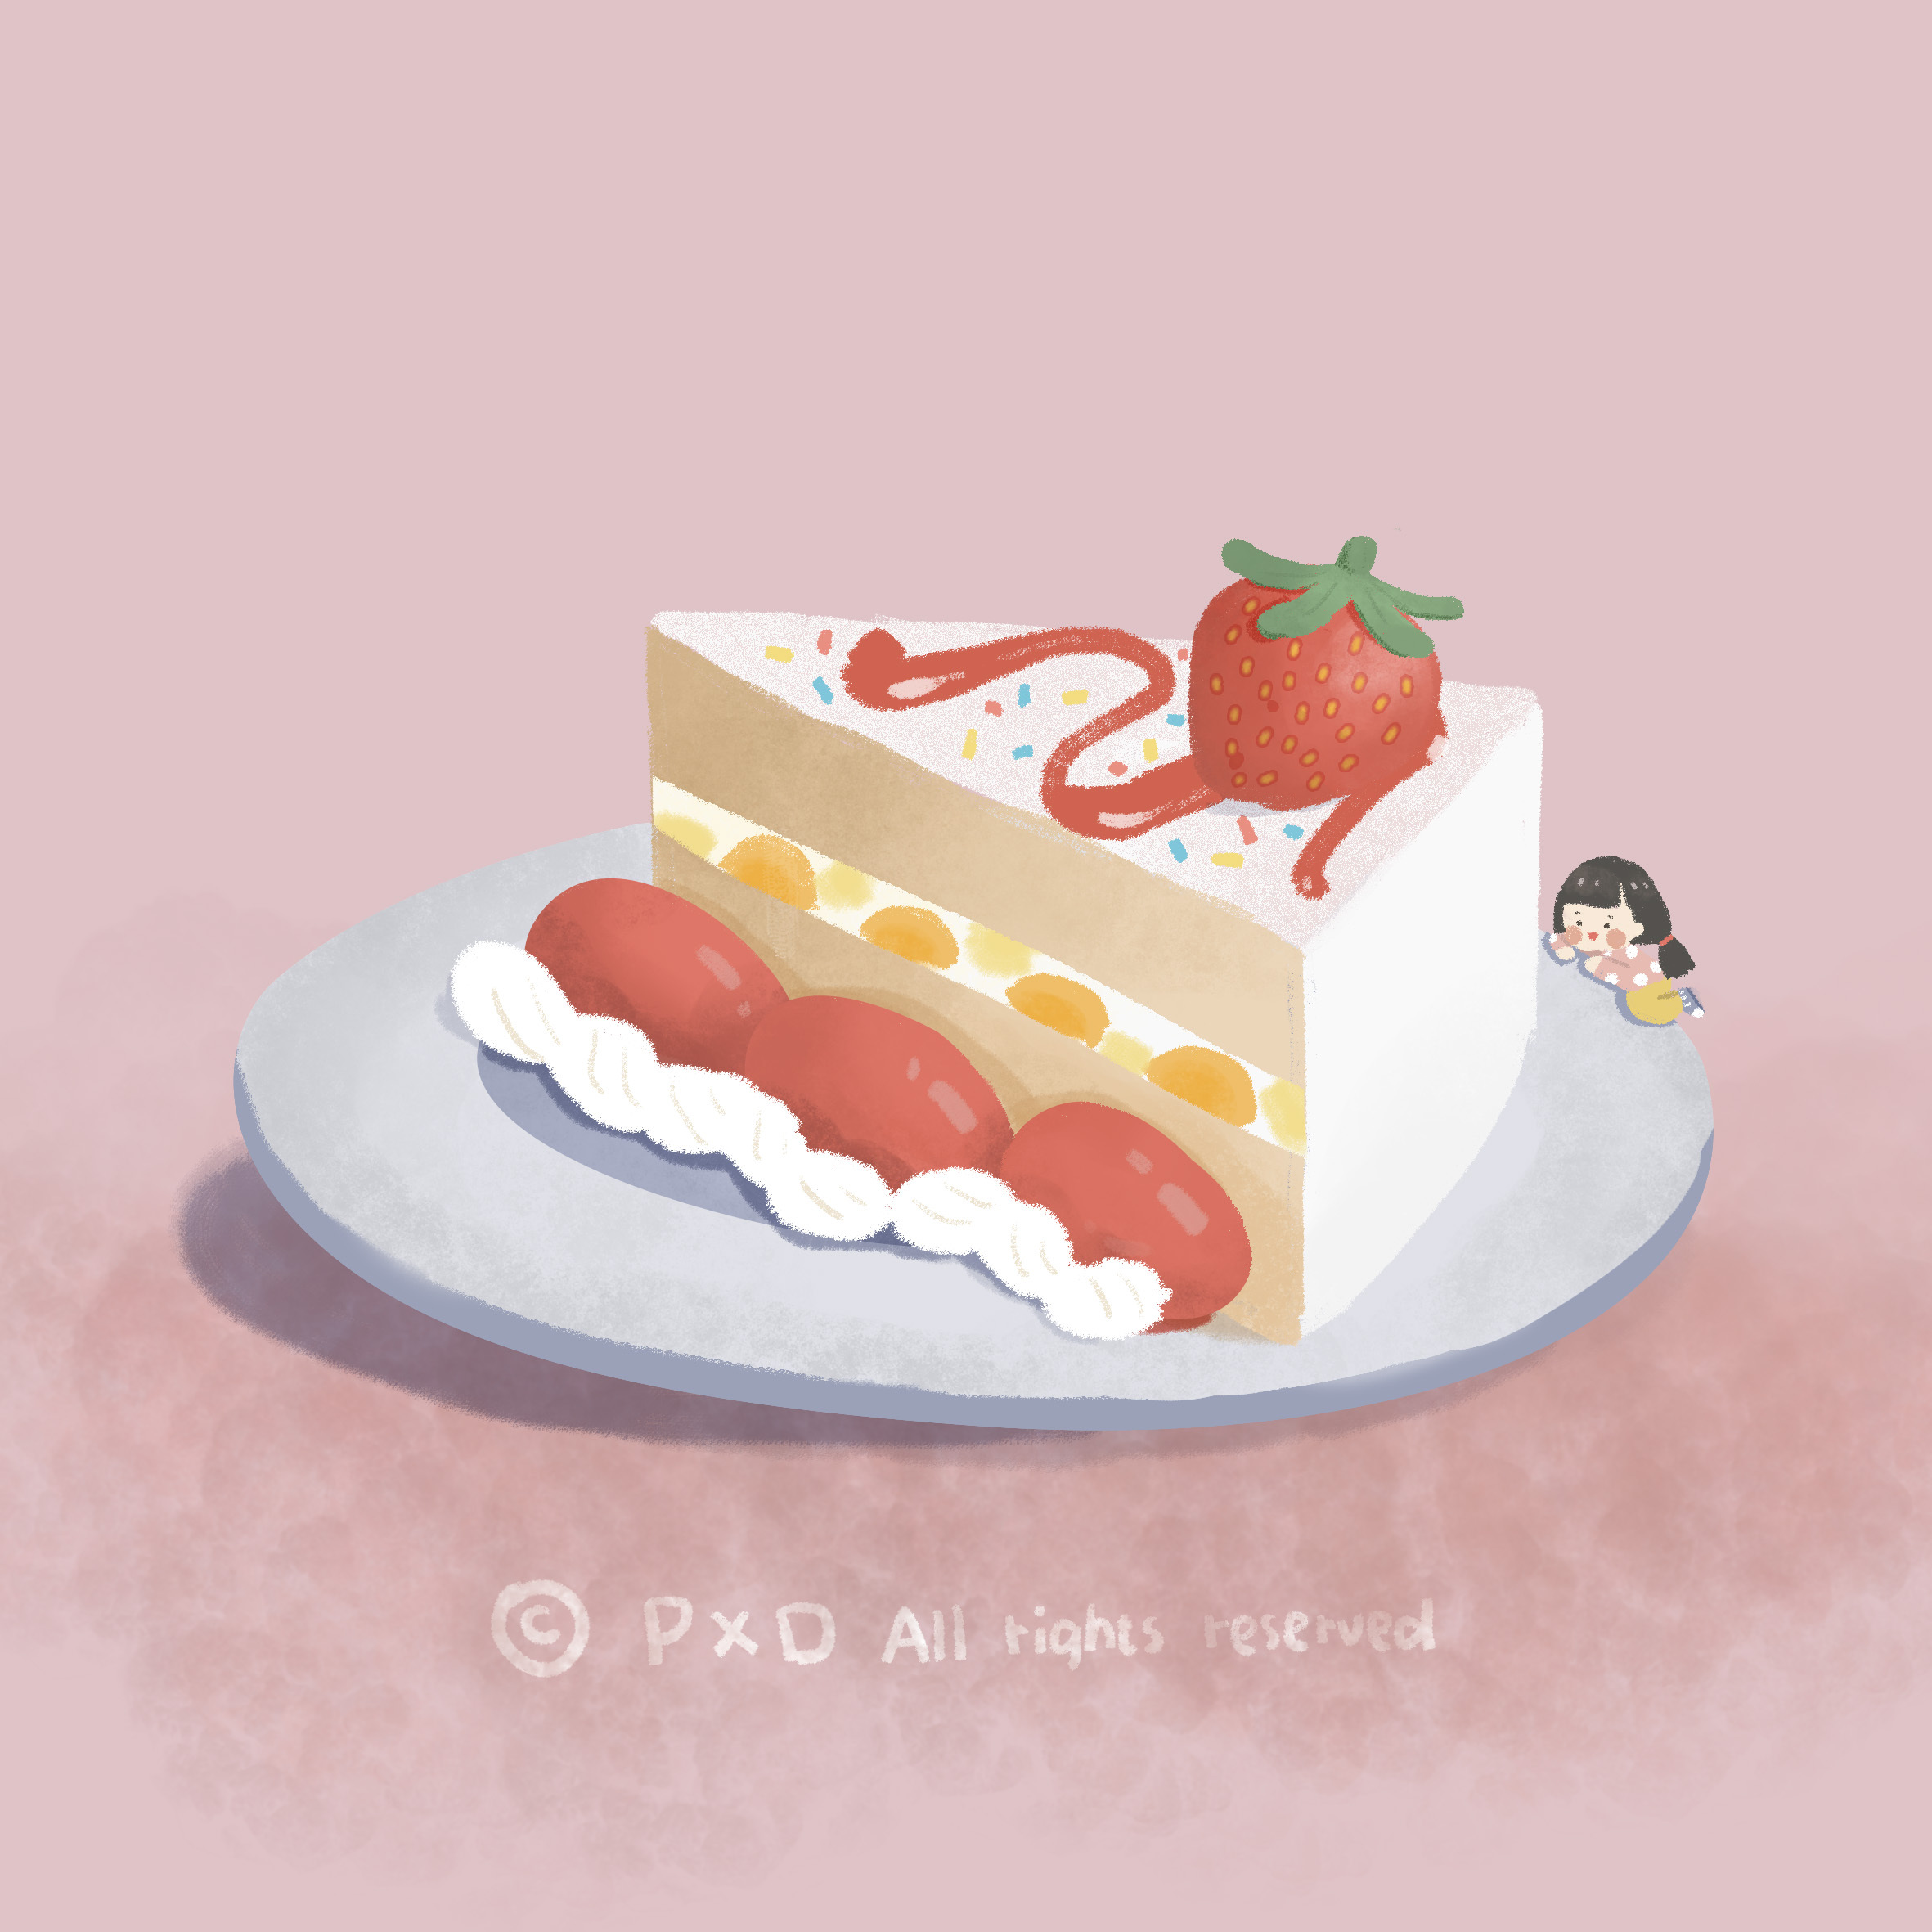 插画练习/ 草莓蛋糕:cake